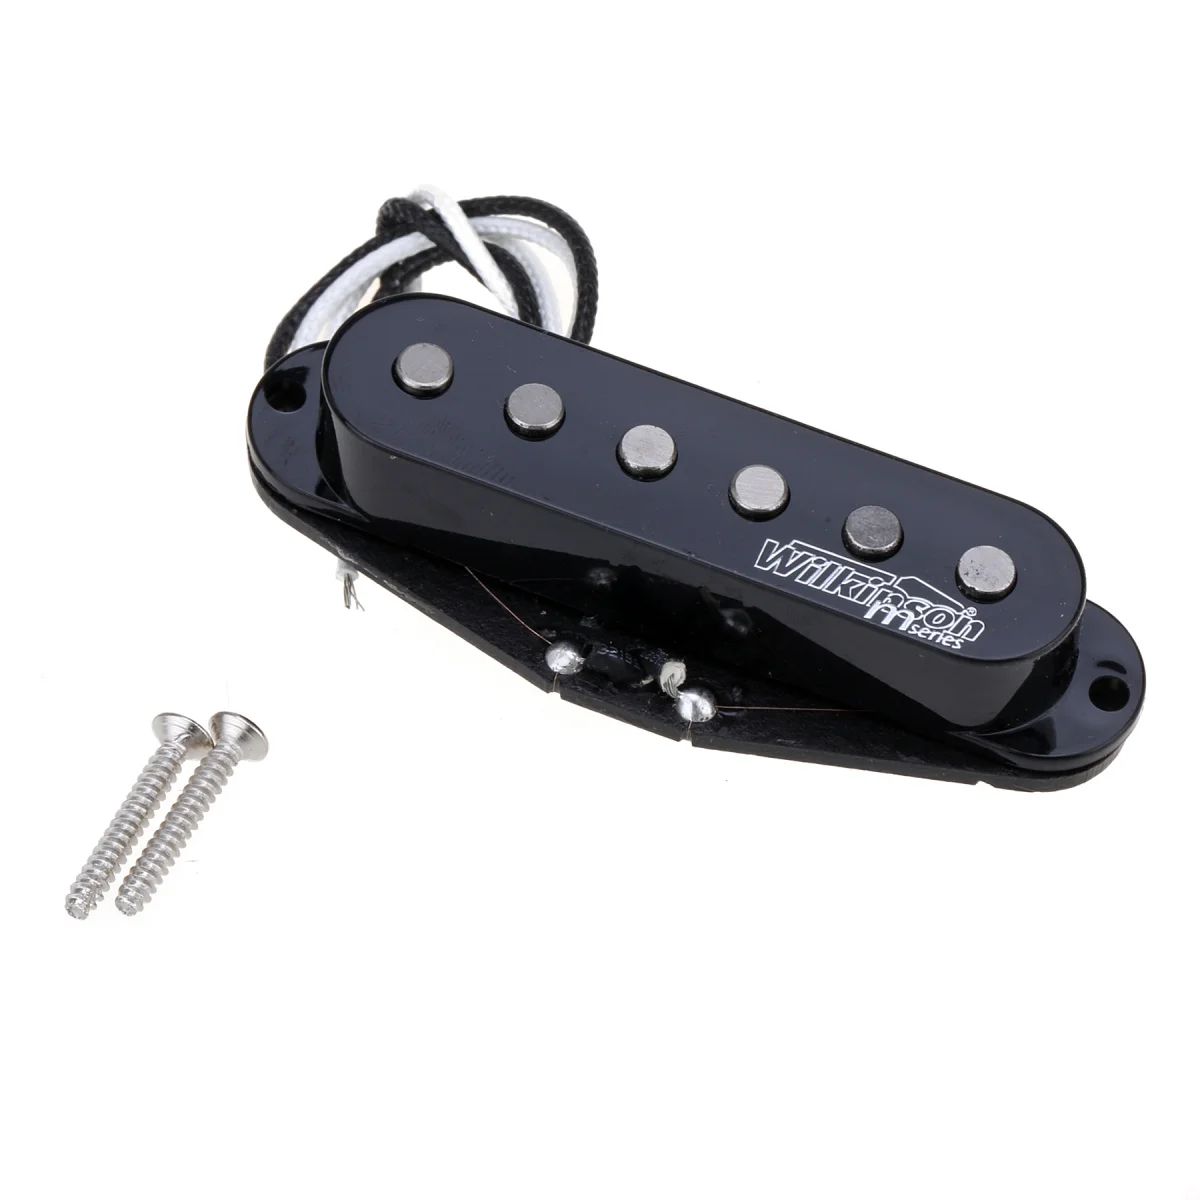 Wilkinson M Series High Output Alnico 5 Strat Single-Coil, Most Vyzdvihnutie na Stratocaster Elektrickú Gitaru, Čierne 0